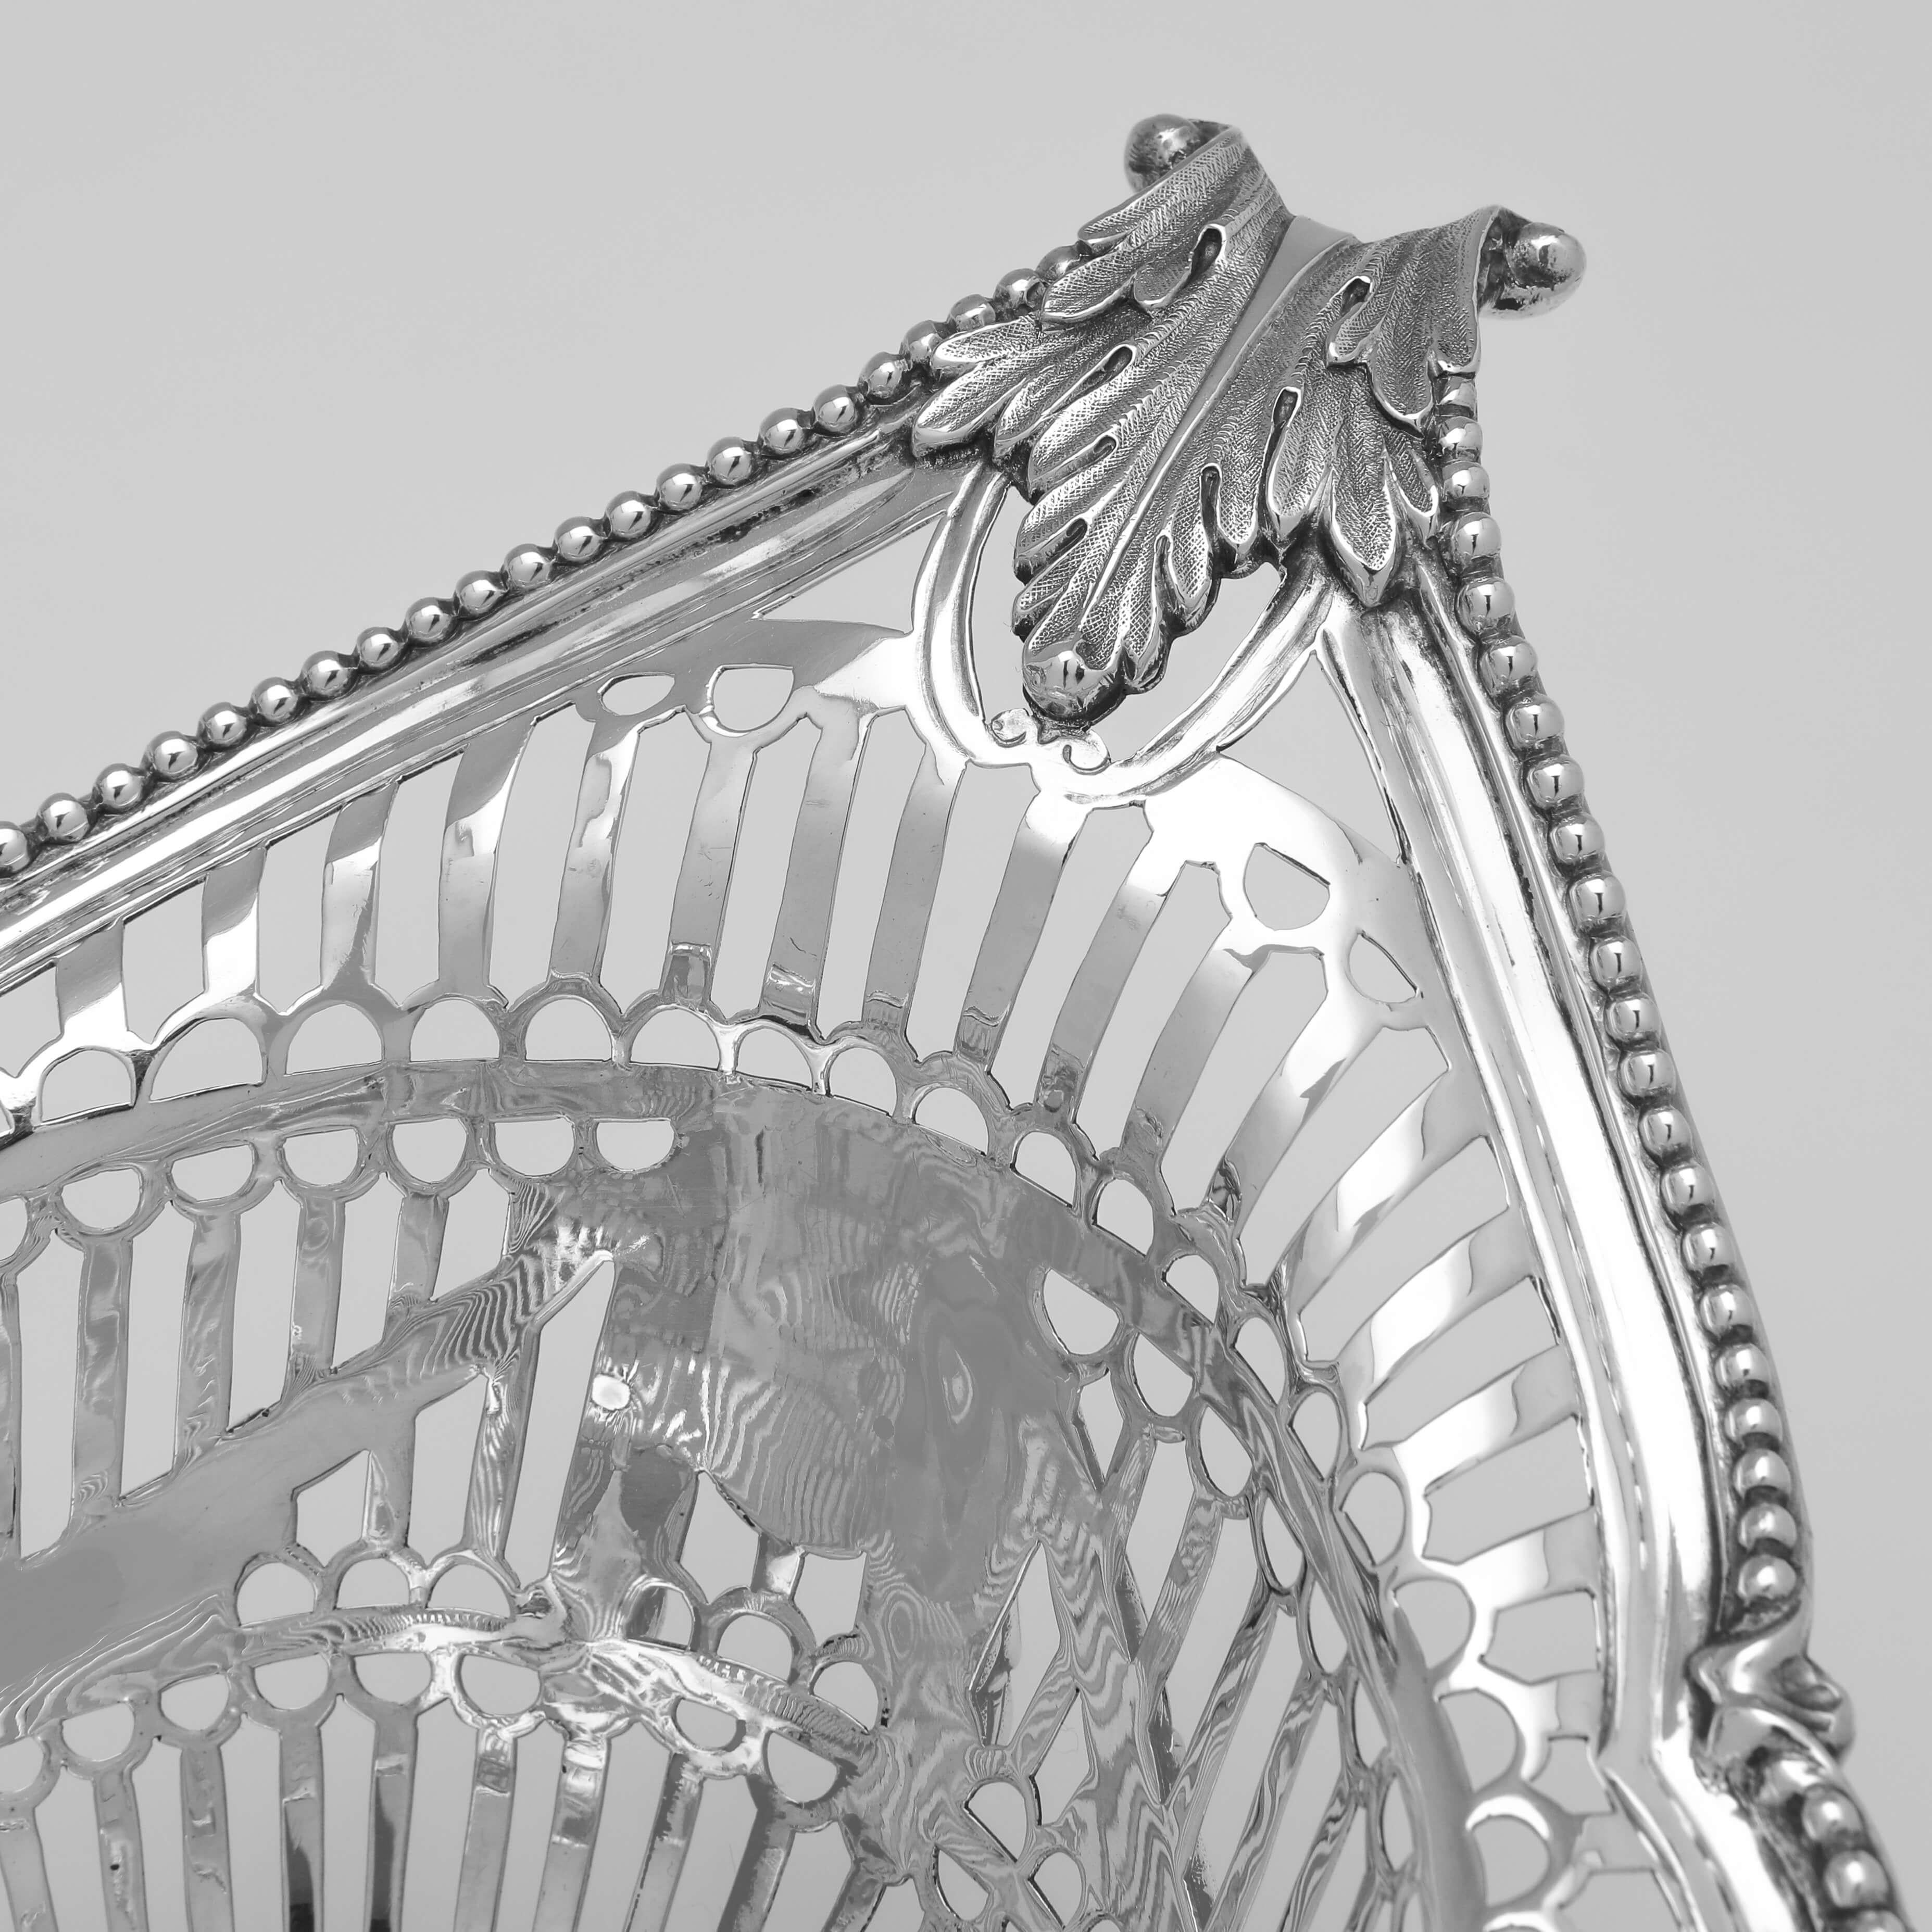 Diese beeindruckende Epergne aus antikem Sterlingsilber mit neun Körben wurde 1892 in London von D. & J. Wellby gepunzt. Sie ist ein schönes Beispiel für das Design im Adam-Stil mit durchbrochenen Verzierungen, neoklassischem Dekor, vier runden